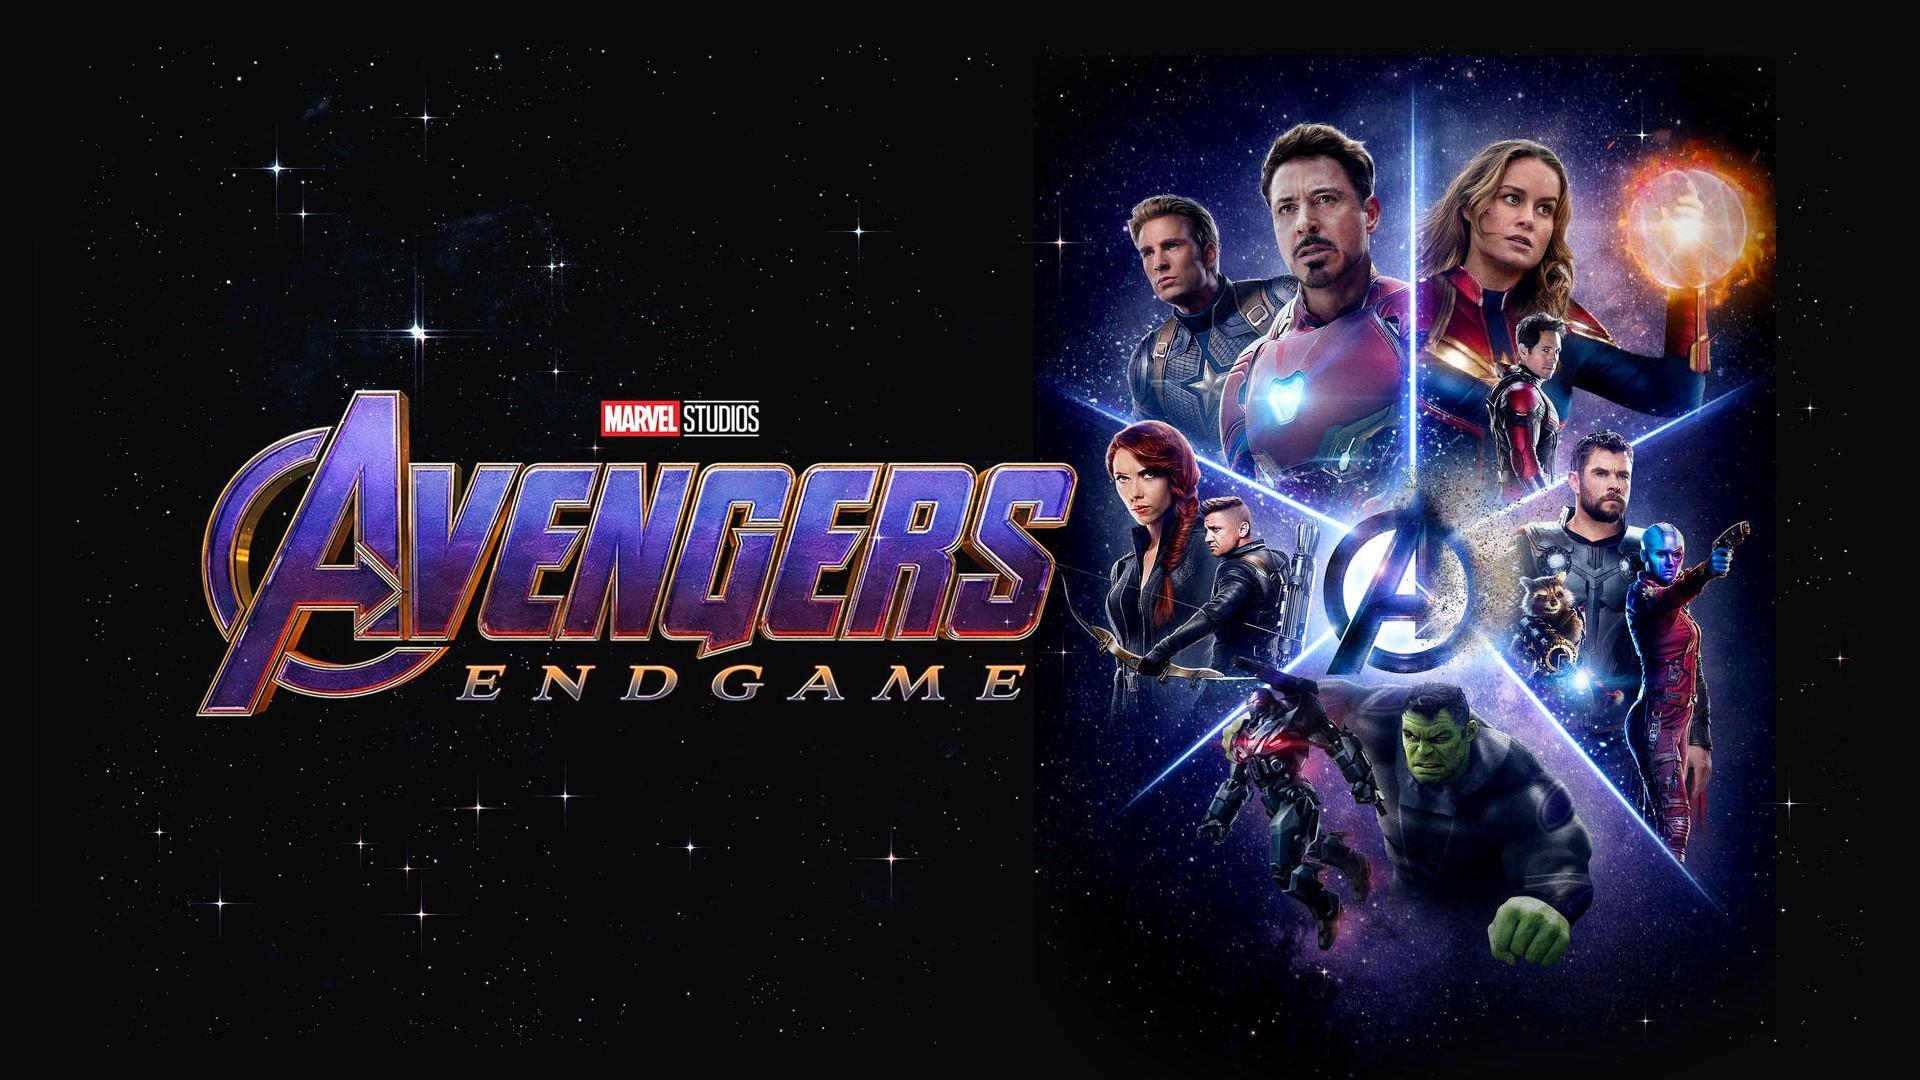 Avengers Endgame 2019 Background Movie Poster Wallpaper HD